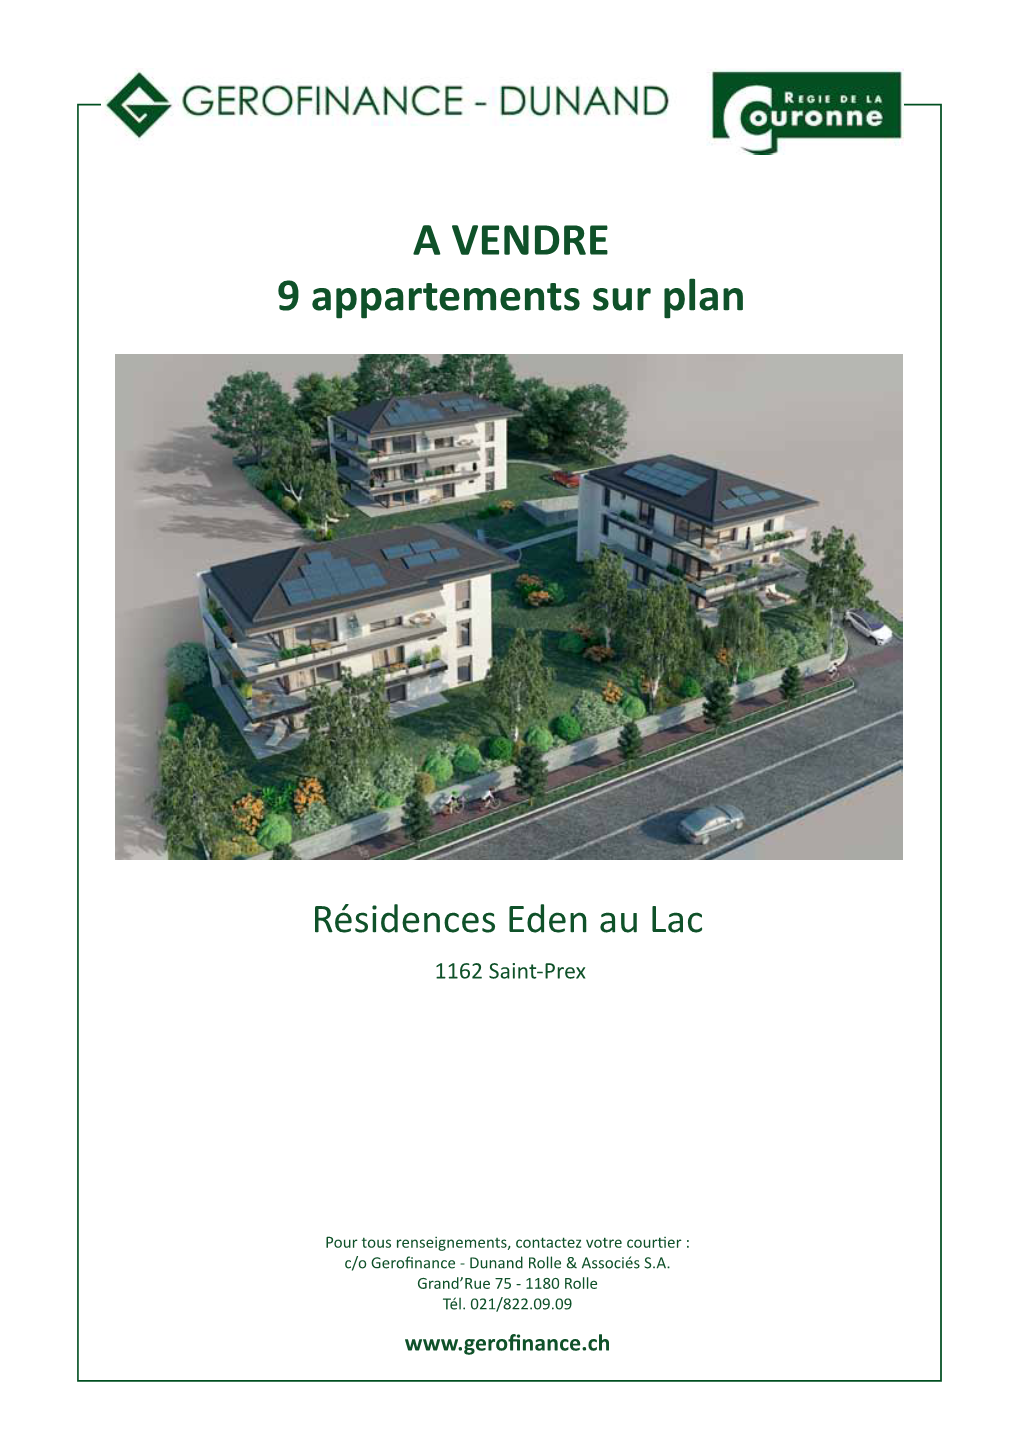 A VENDRE 9 Appartements Sur Plan